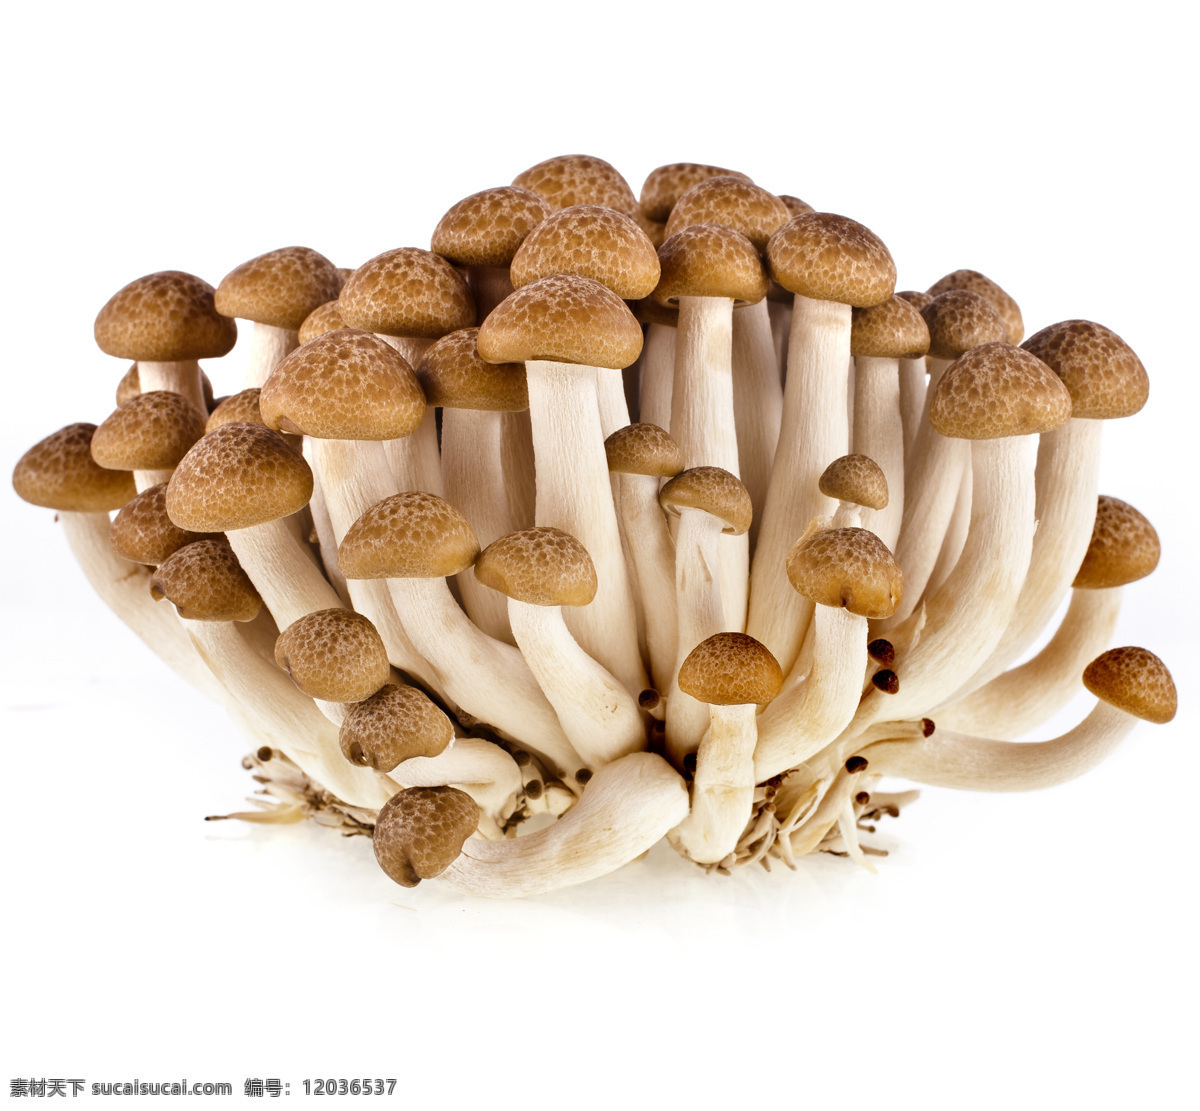 蘑菇 野蘑菇 香蘑菇 野菌菇 食用菌 菌类 菇子 菇类 蔬菜 生物世界 其他生物